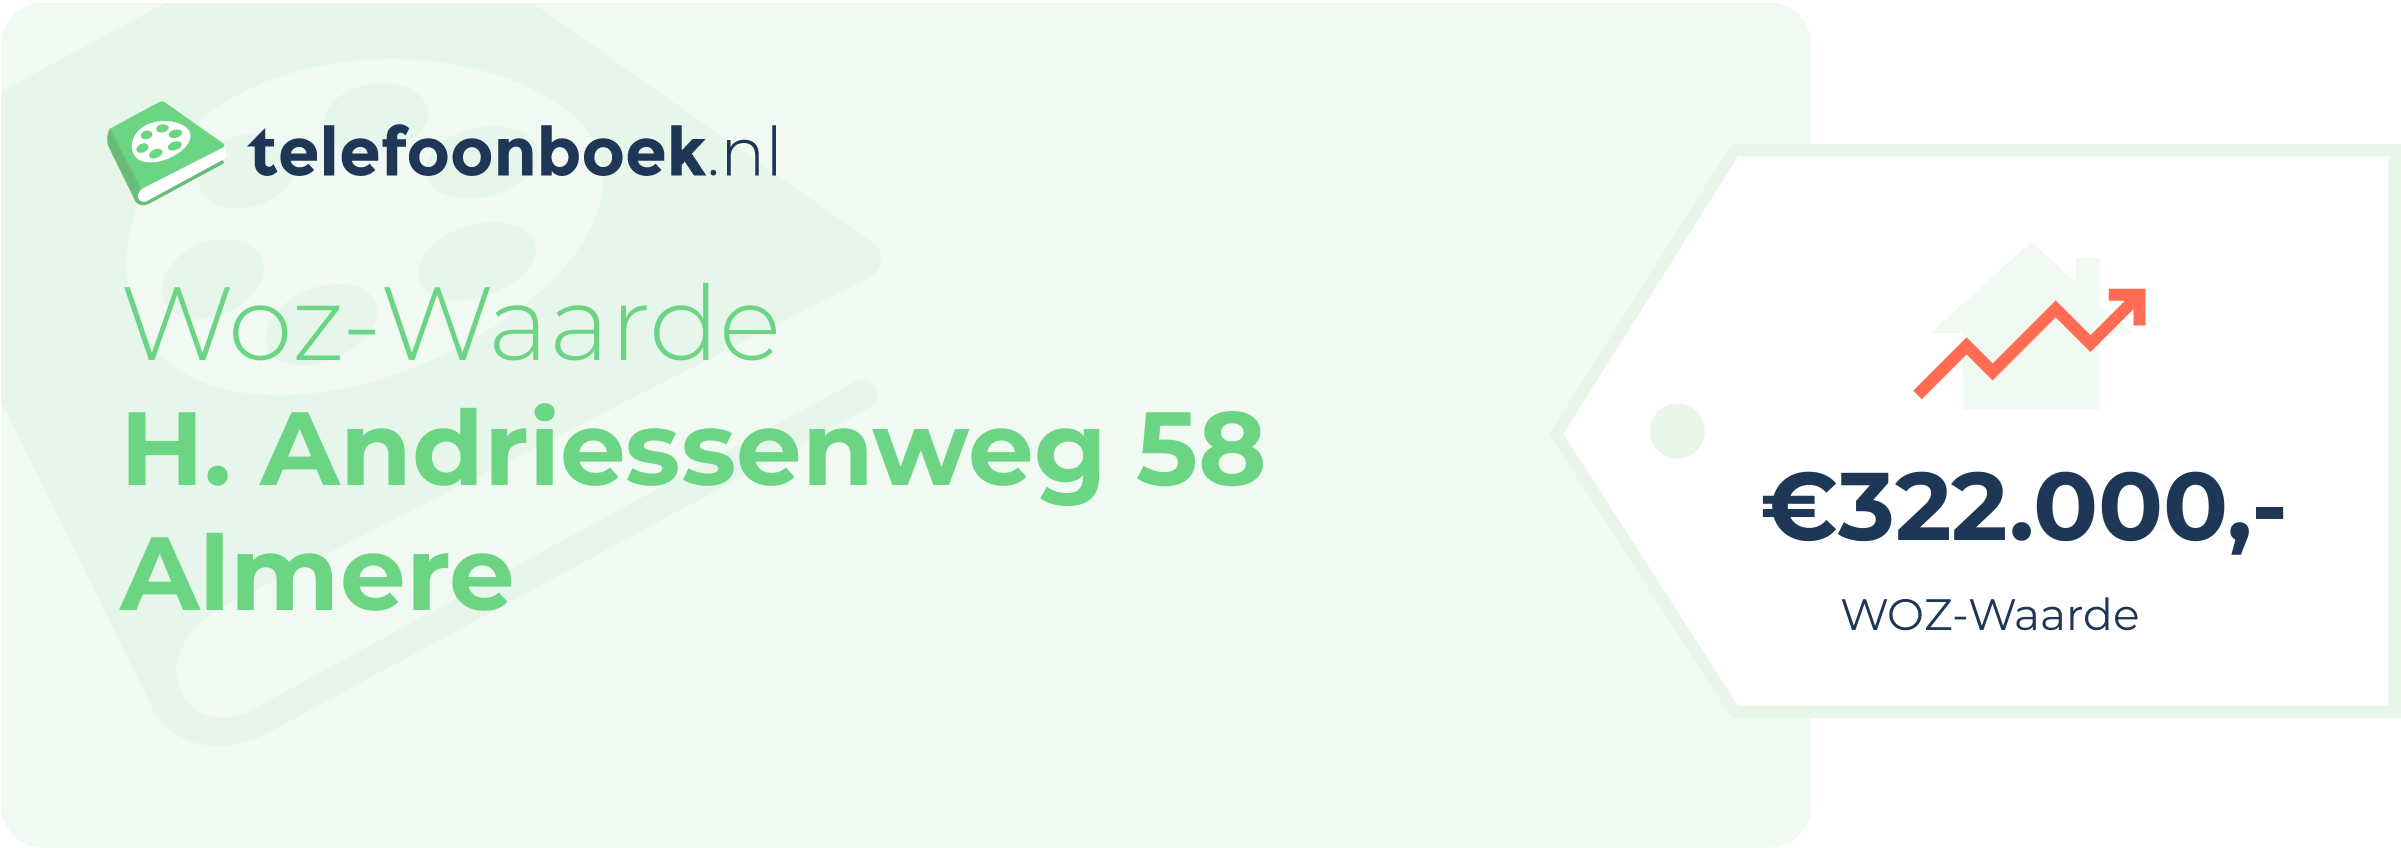 WOZ-waarde H. Andriessenweg 58 Almere